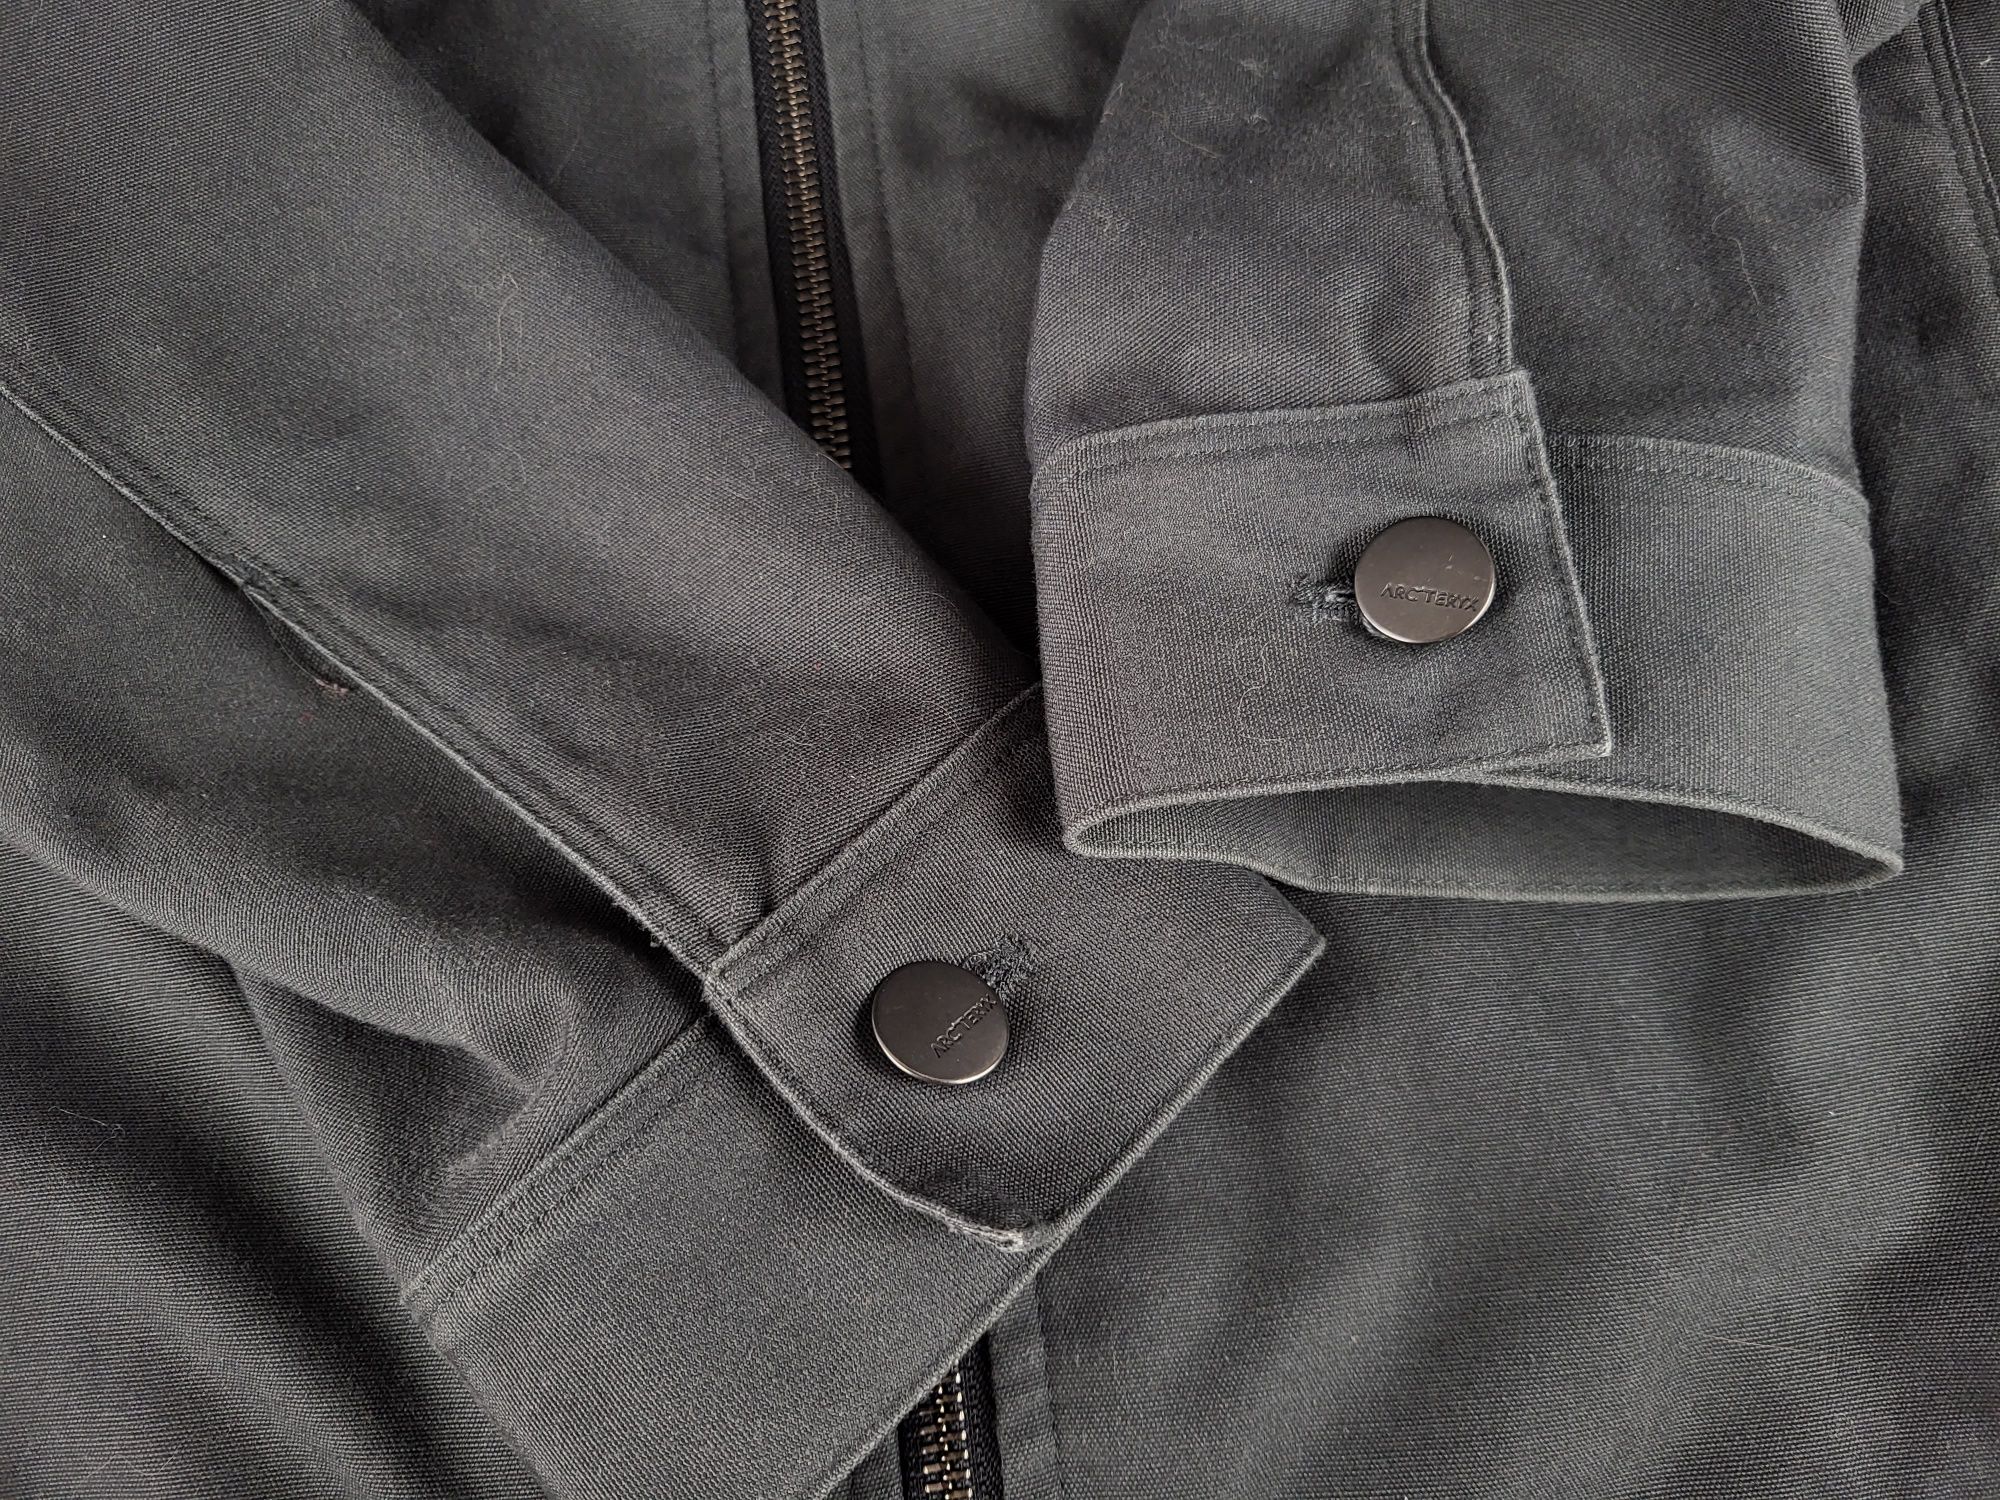 Вінтажна куртка Arc'teryx crosswire jacket